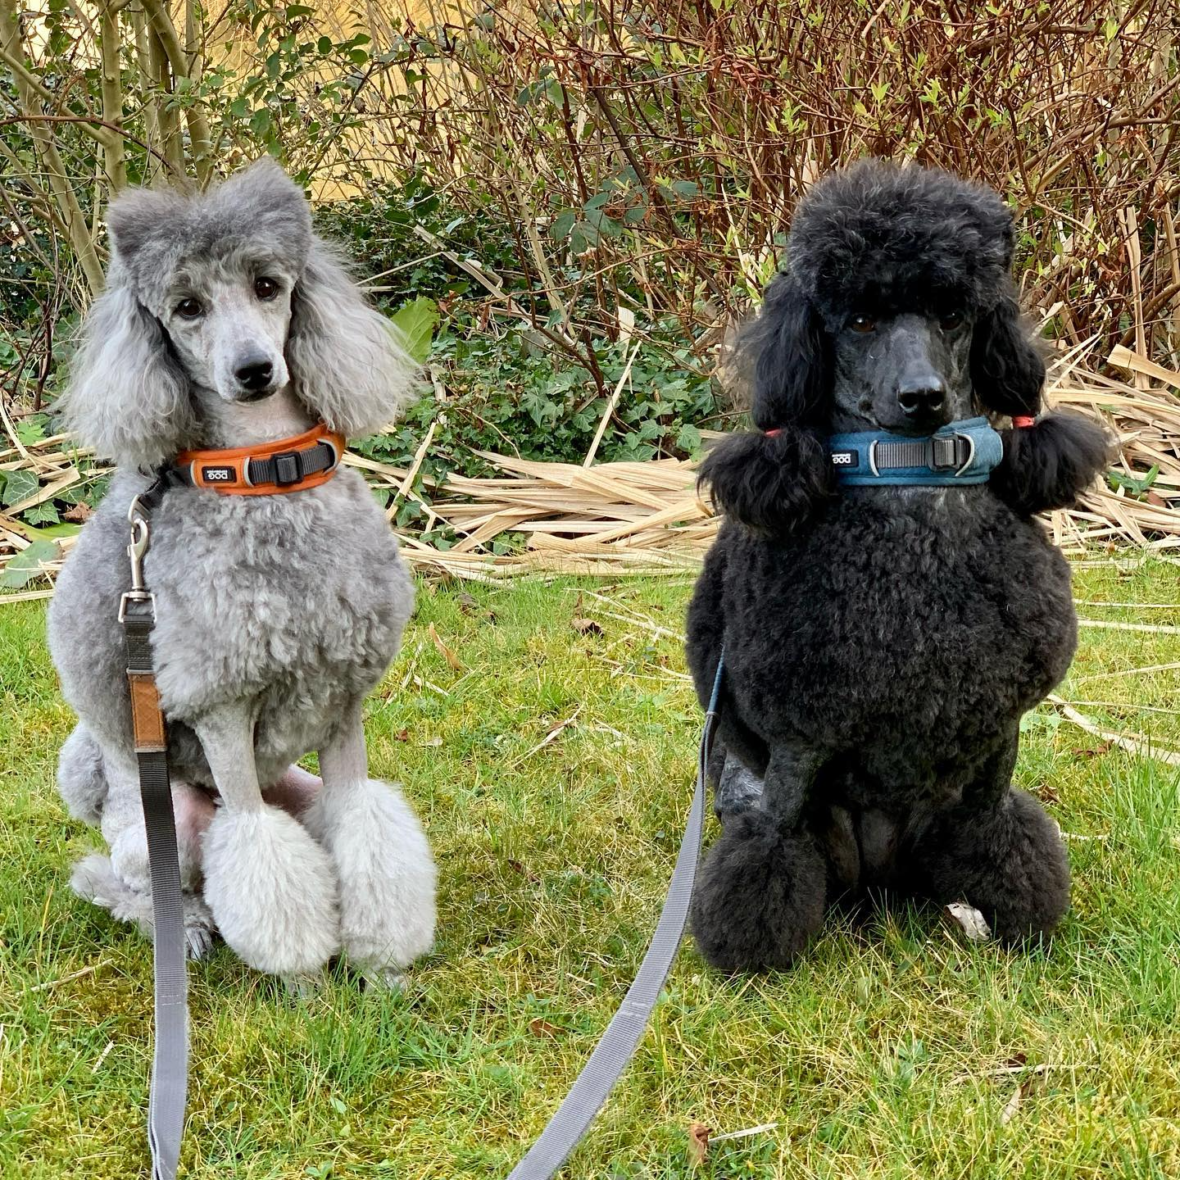 Leia & Jaina the moyen poodles